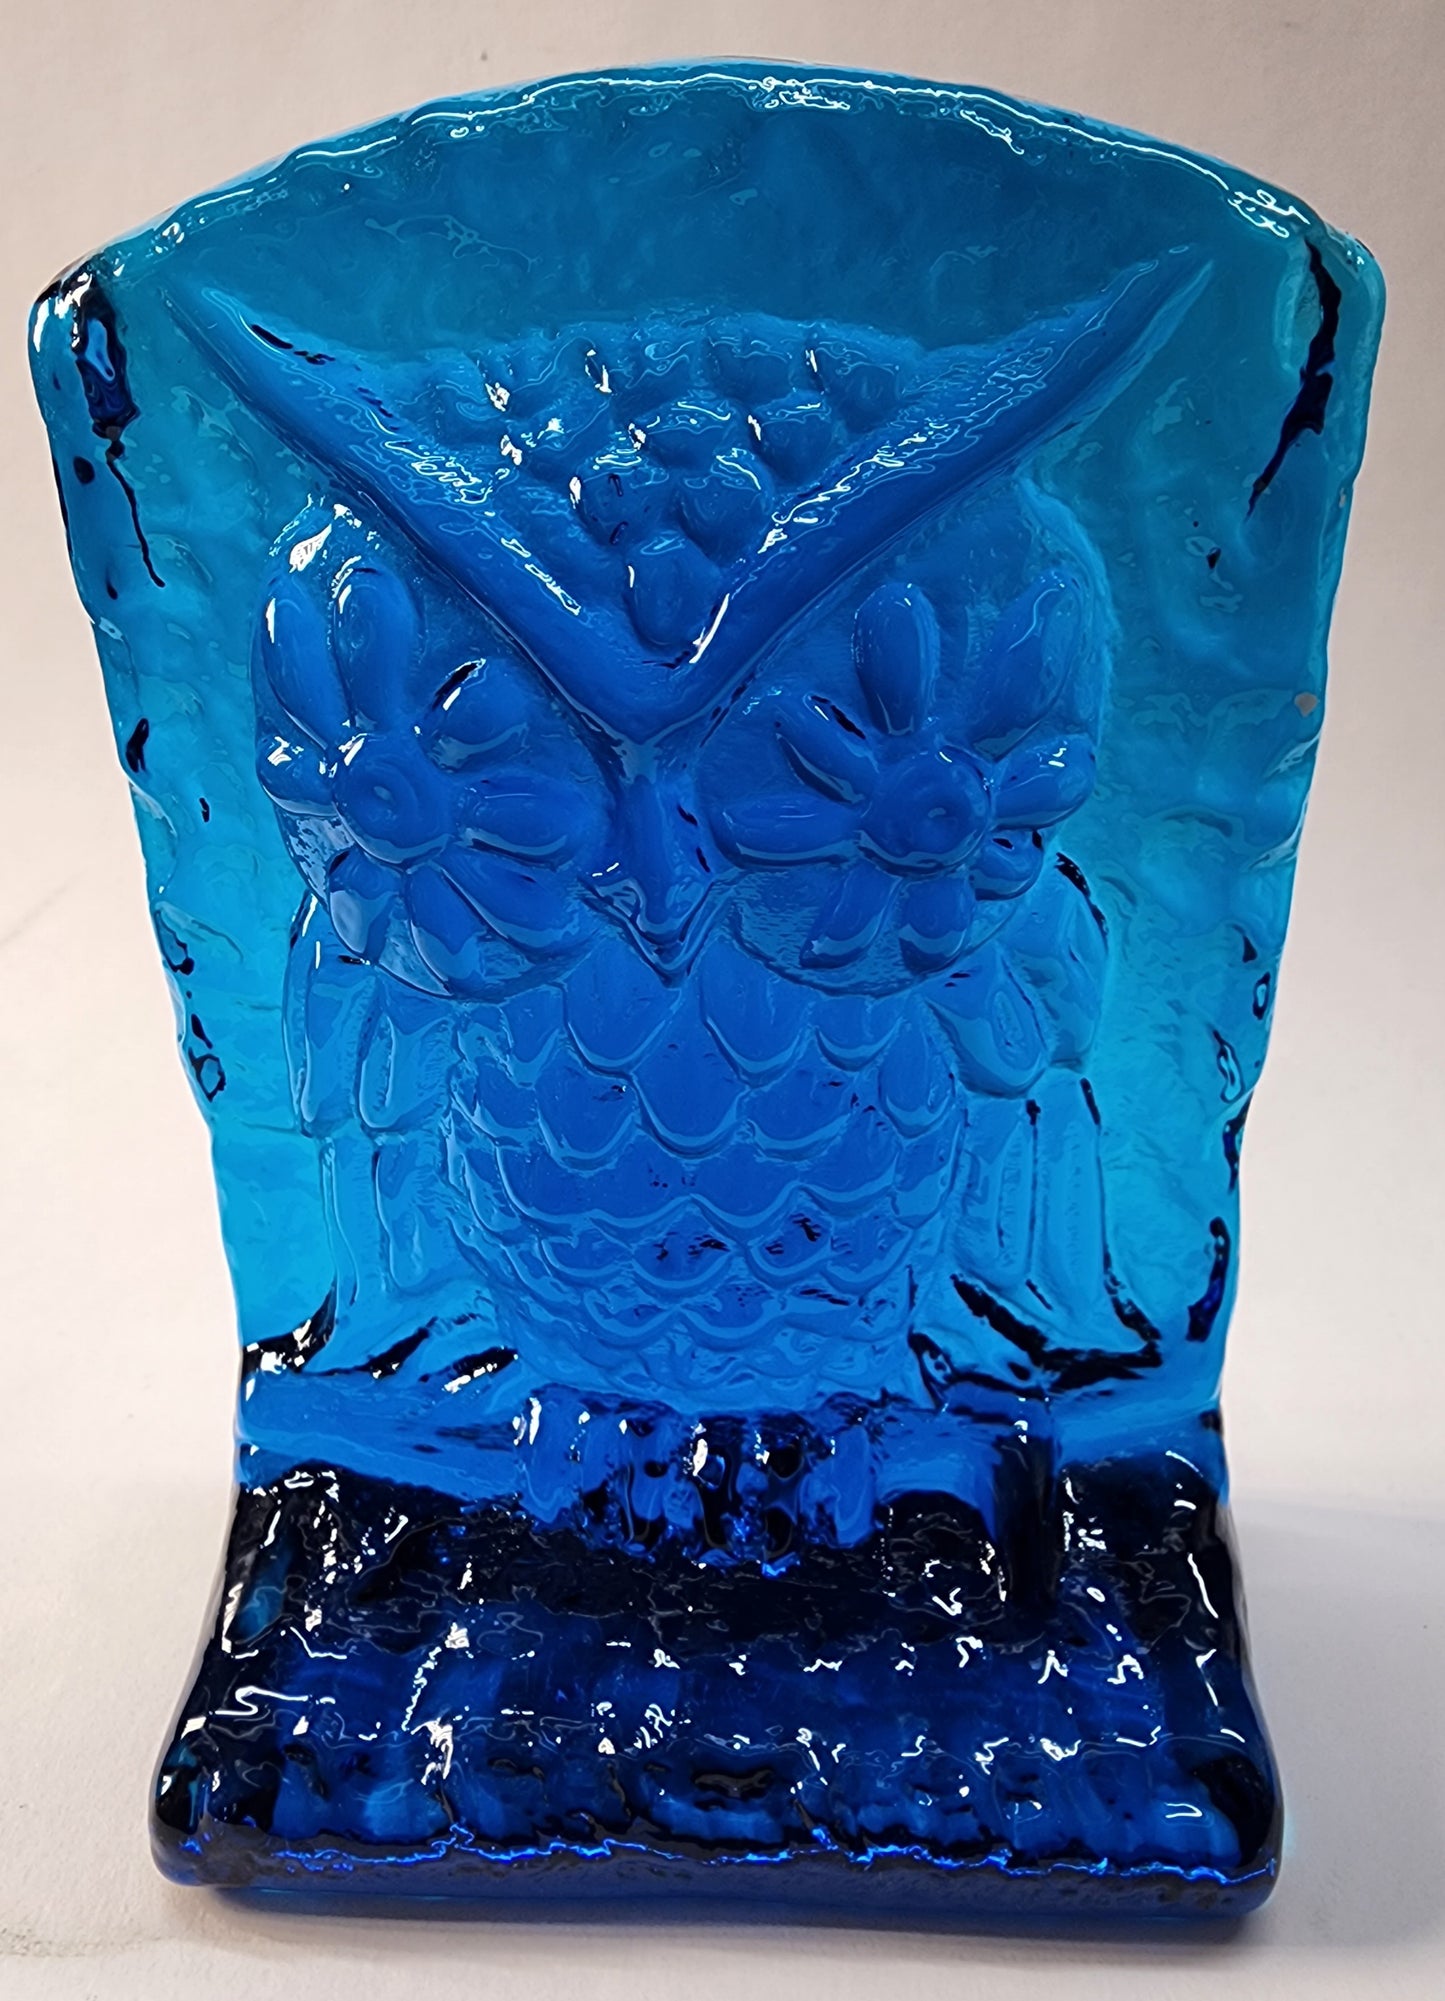 L.E Smith Glass Blue bookend OWL